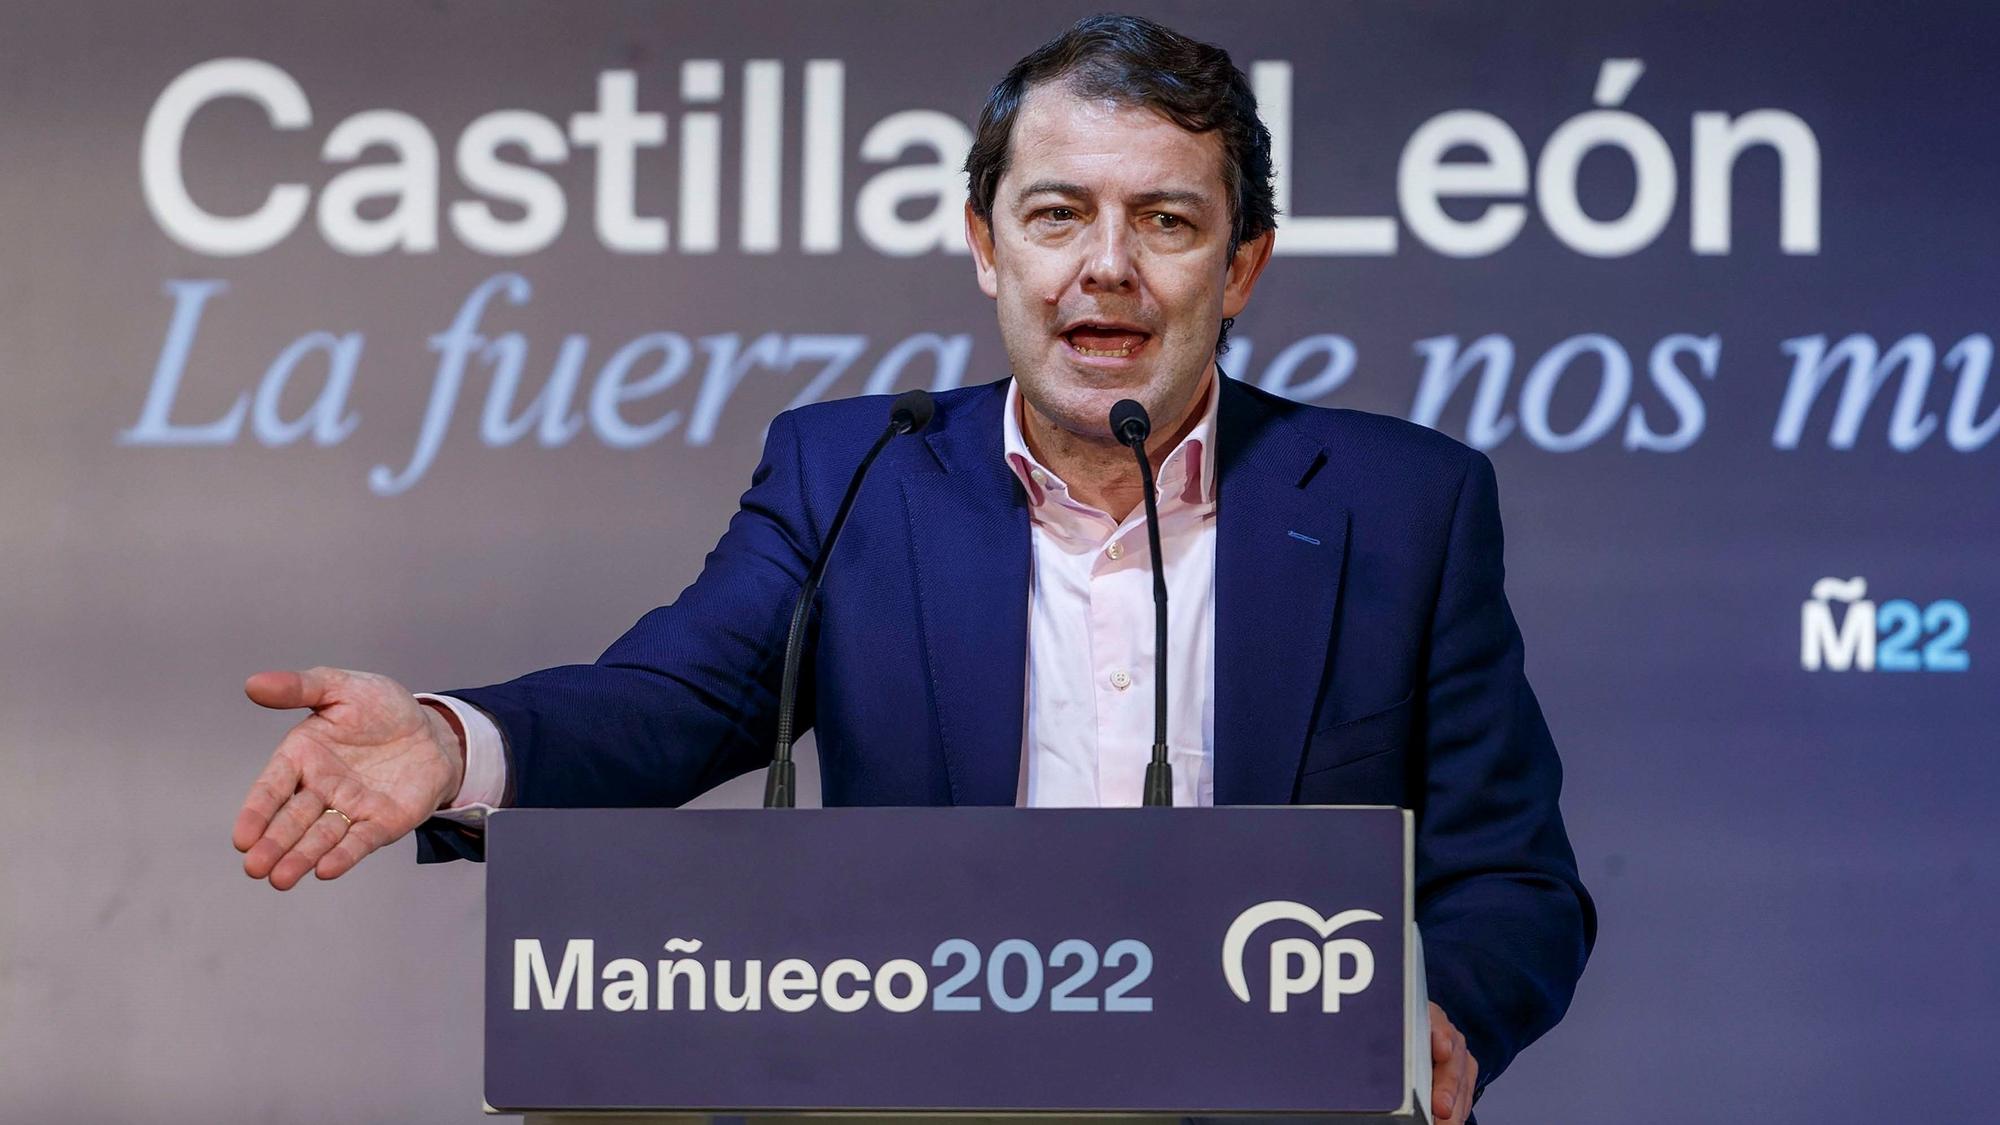 El candidato popular a la presidencia de la Junta de Castilla y León, Alfonso Fernández Mañueco, durante un acto electoral en Burgos.